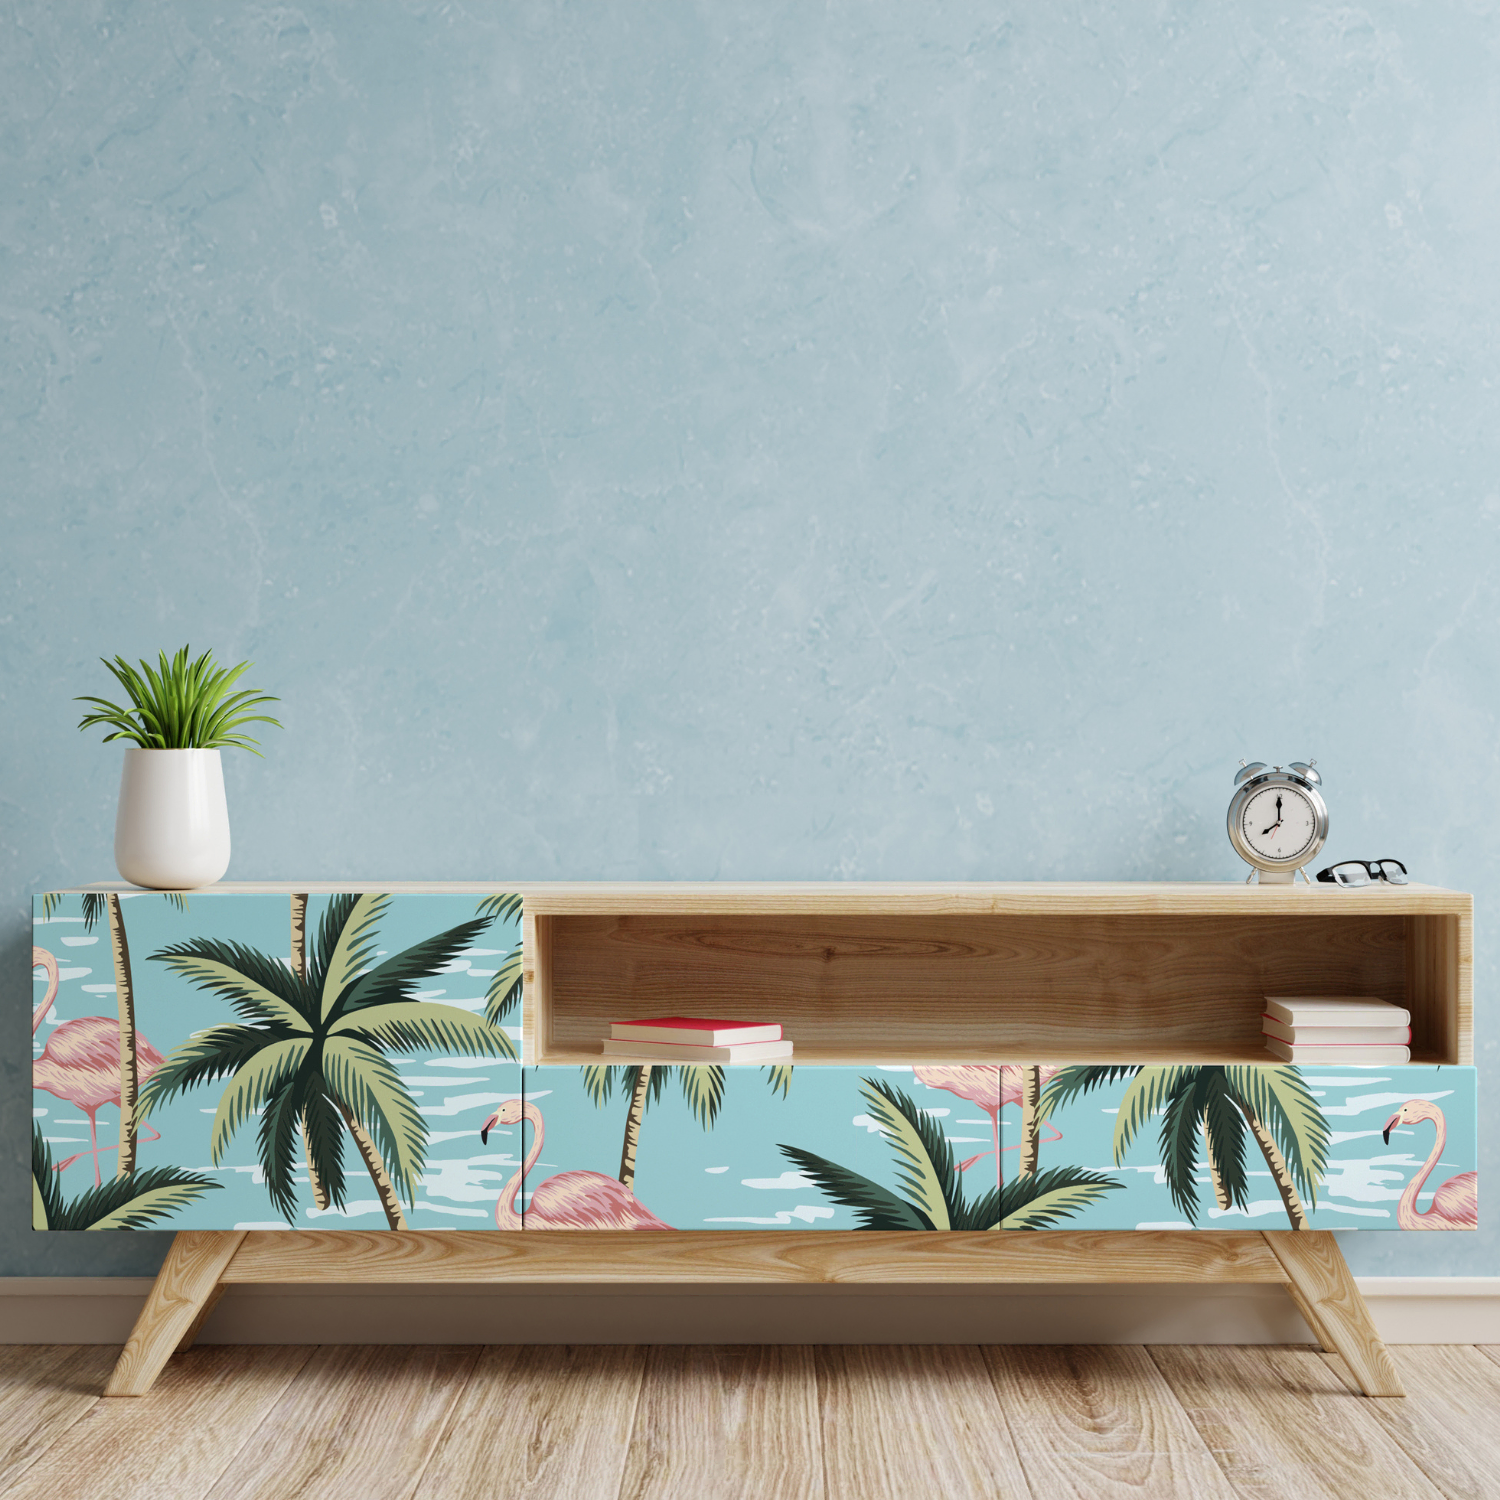 Papier adhésif palmiers vintage pour meuble